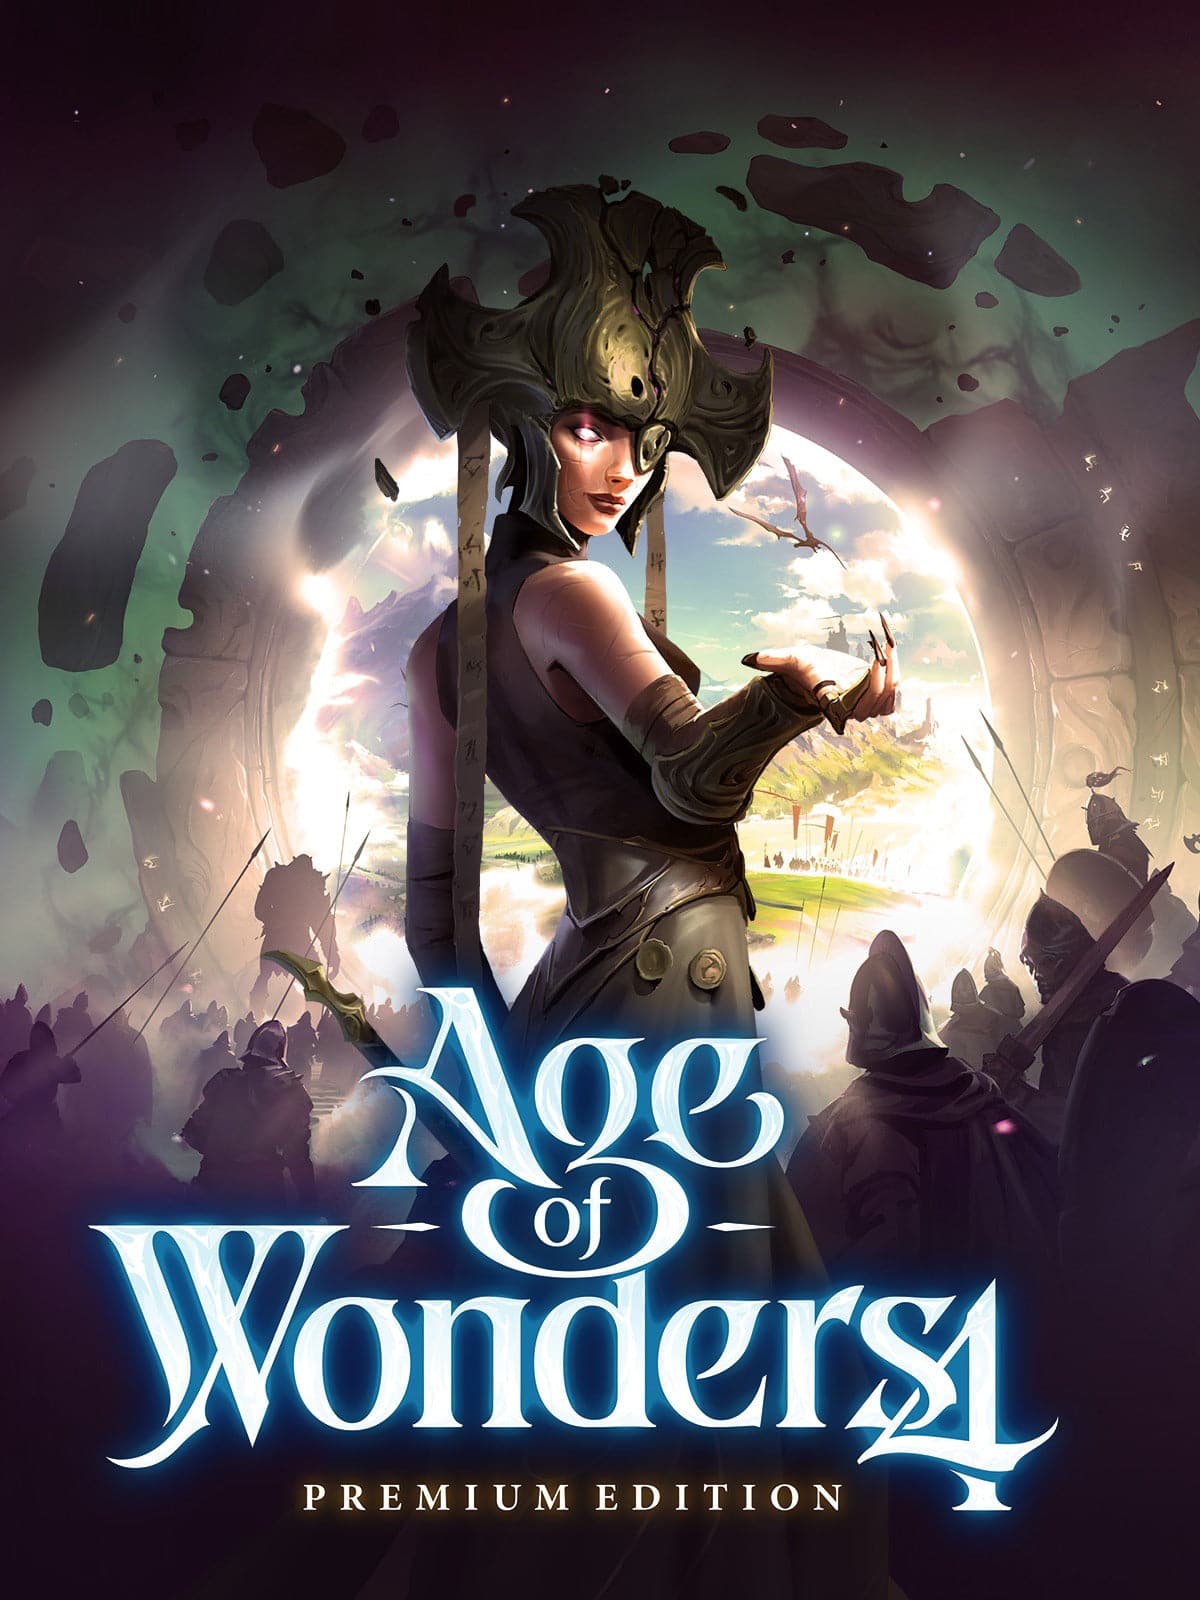 Age of Wonders 4 (Premium Edition) - למחשב - EXON - גיימינג ותוכנות - משחקים ותוכנות למחשב ולאקס בוקס!